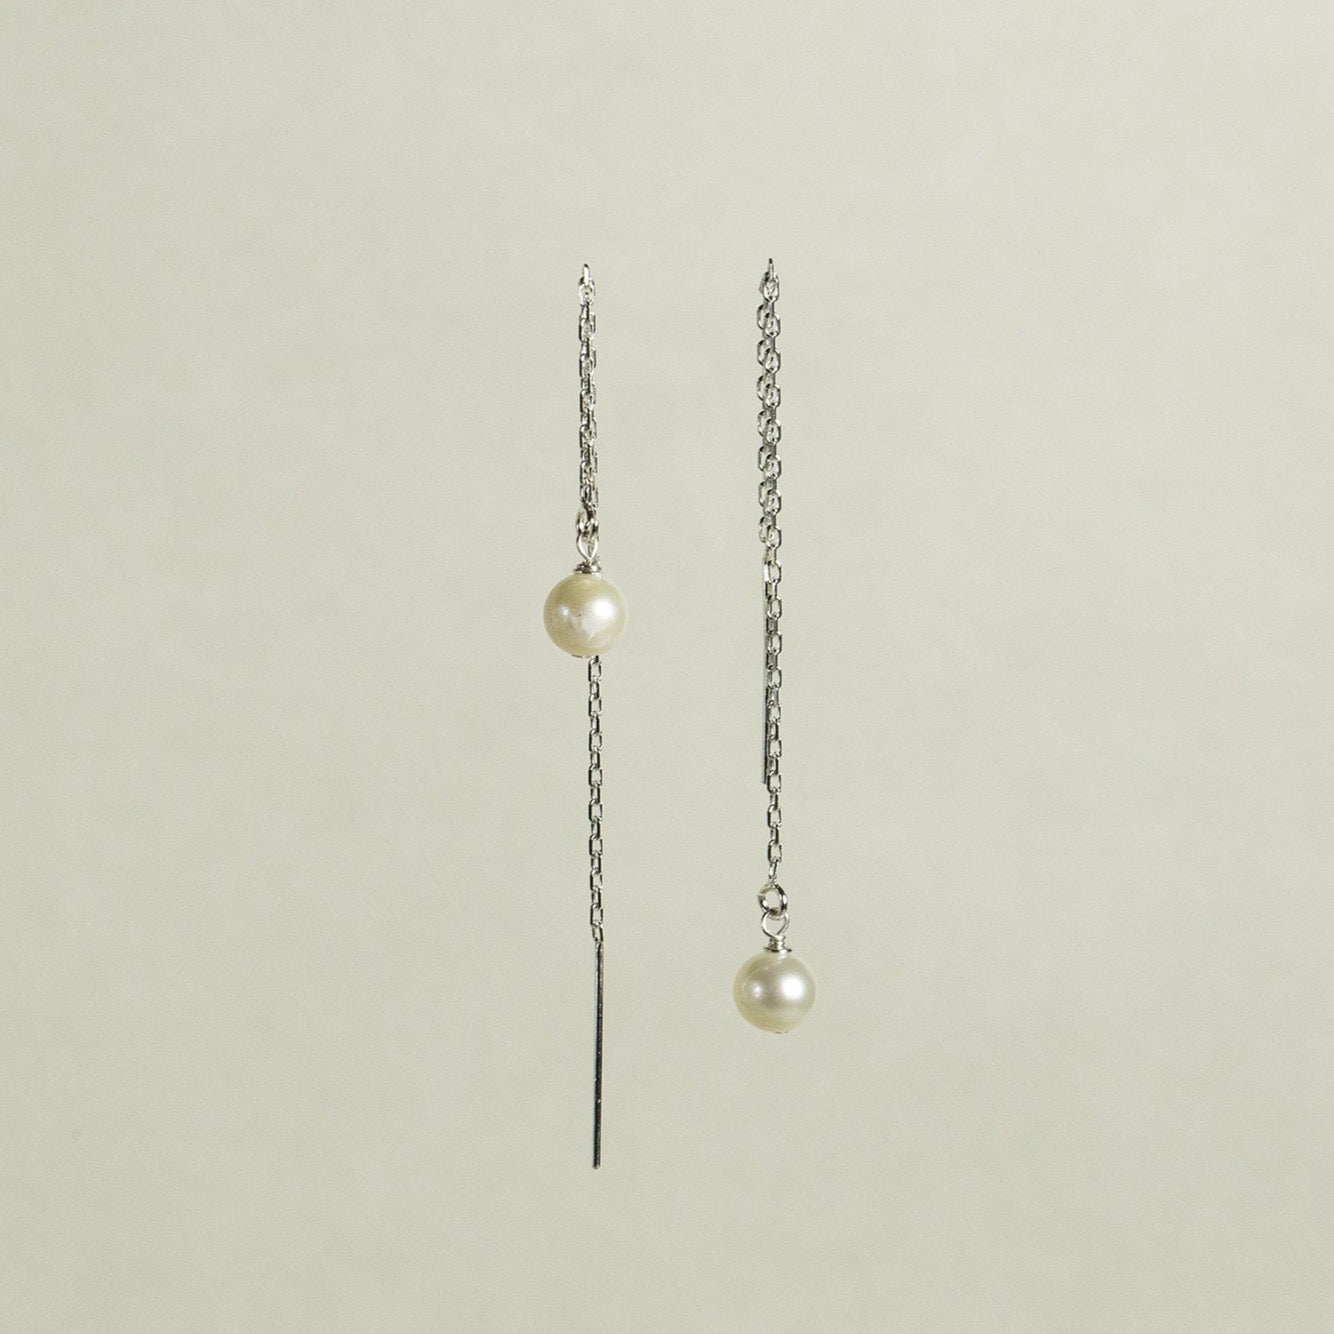 Thread-through Silver Pearl Earrings